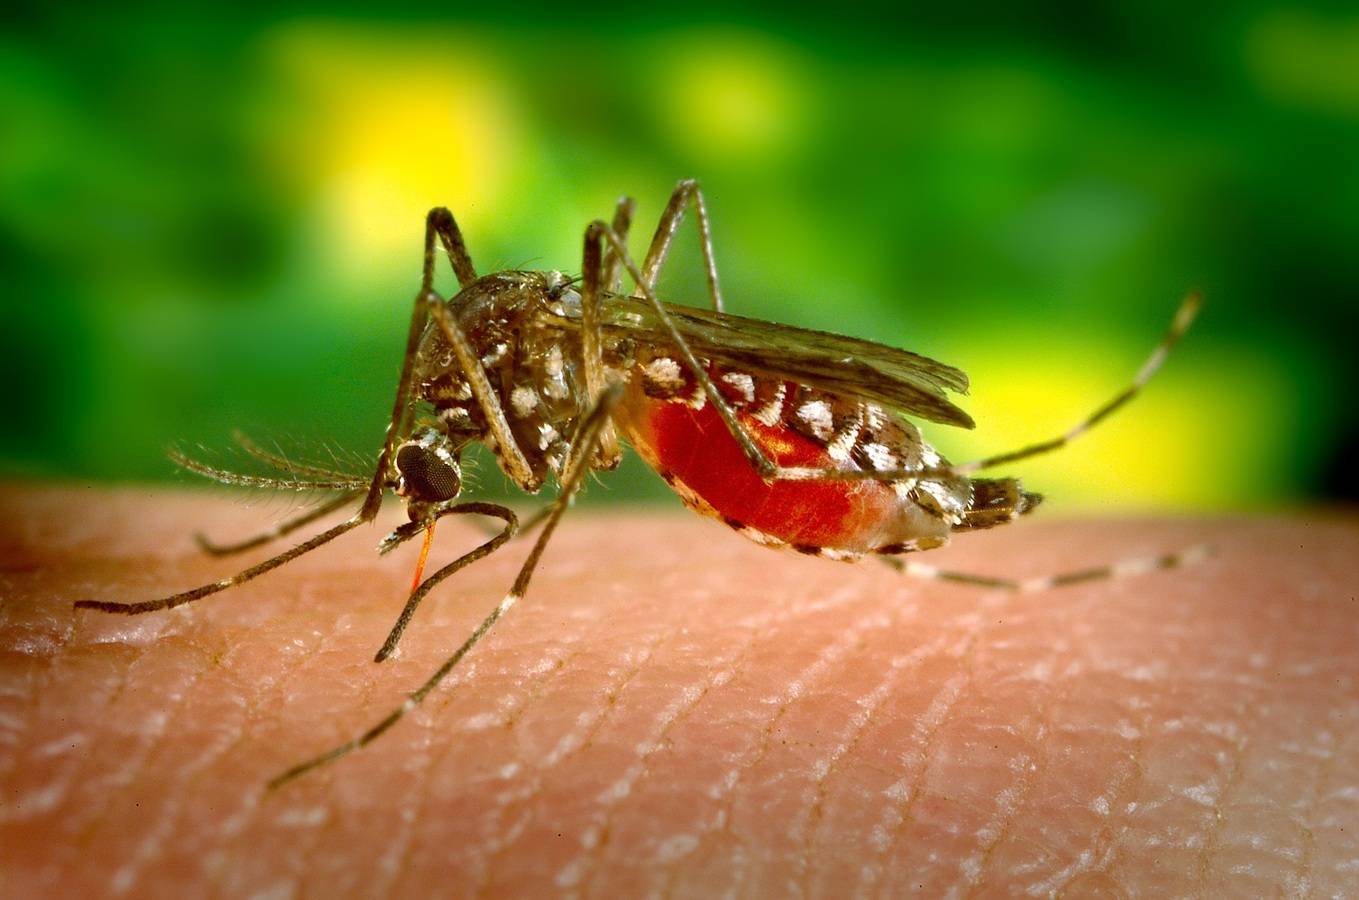 Роспотребнадзор усилил контроль за рейсами из Египта из-за вспышек неизвестной болезни, похожей на лихорадку денге